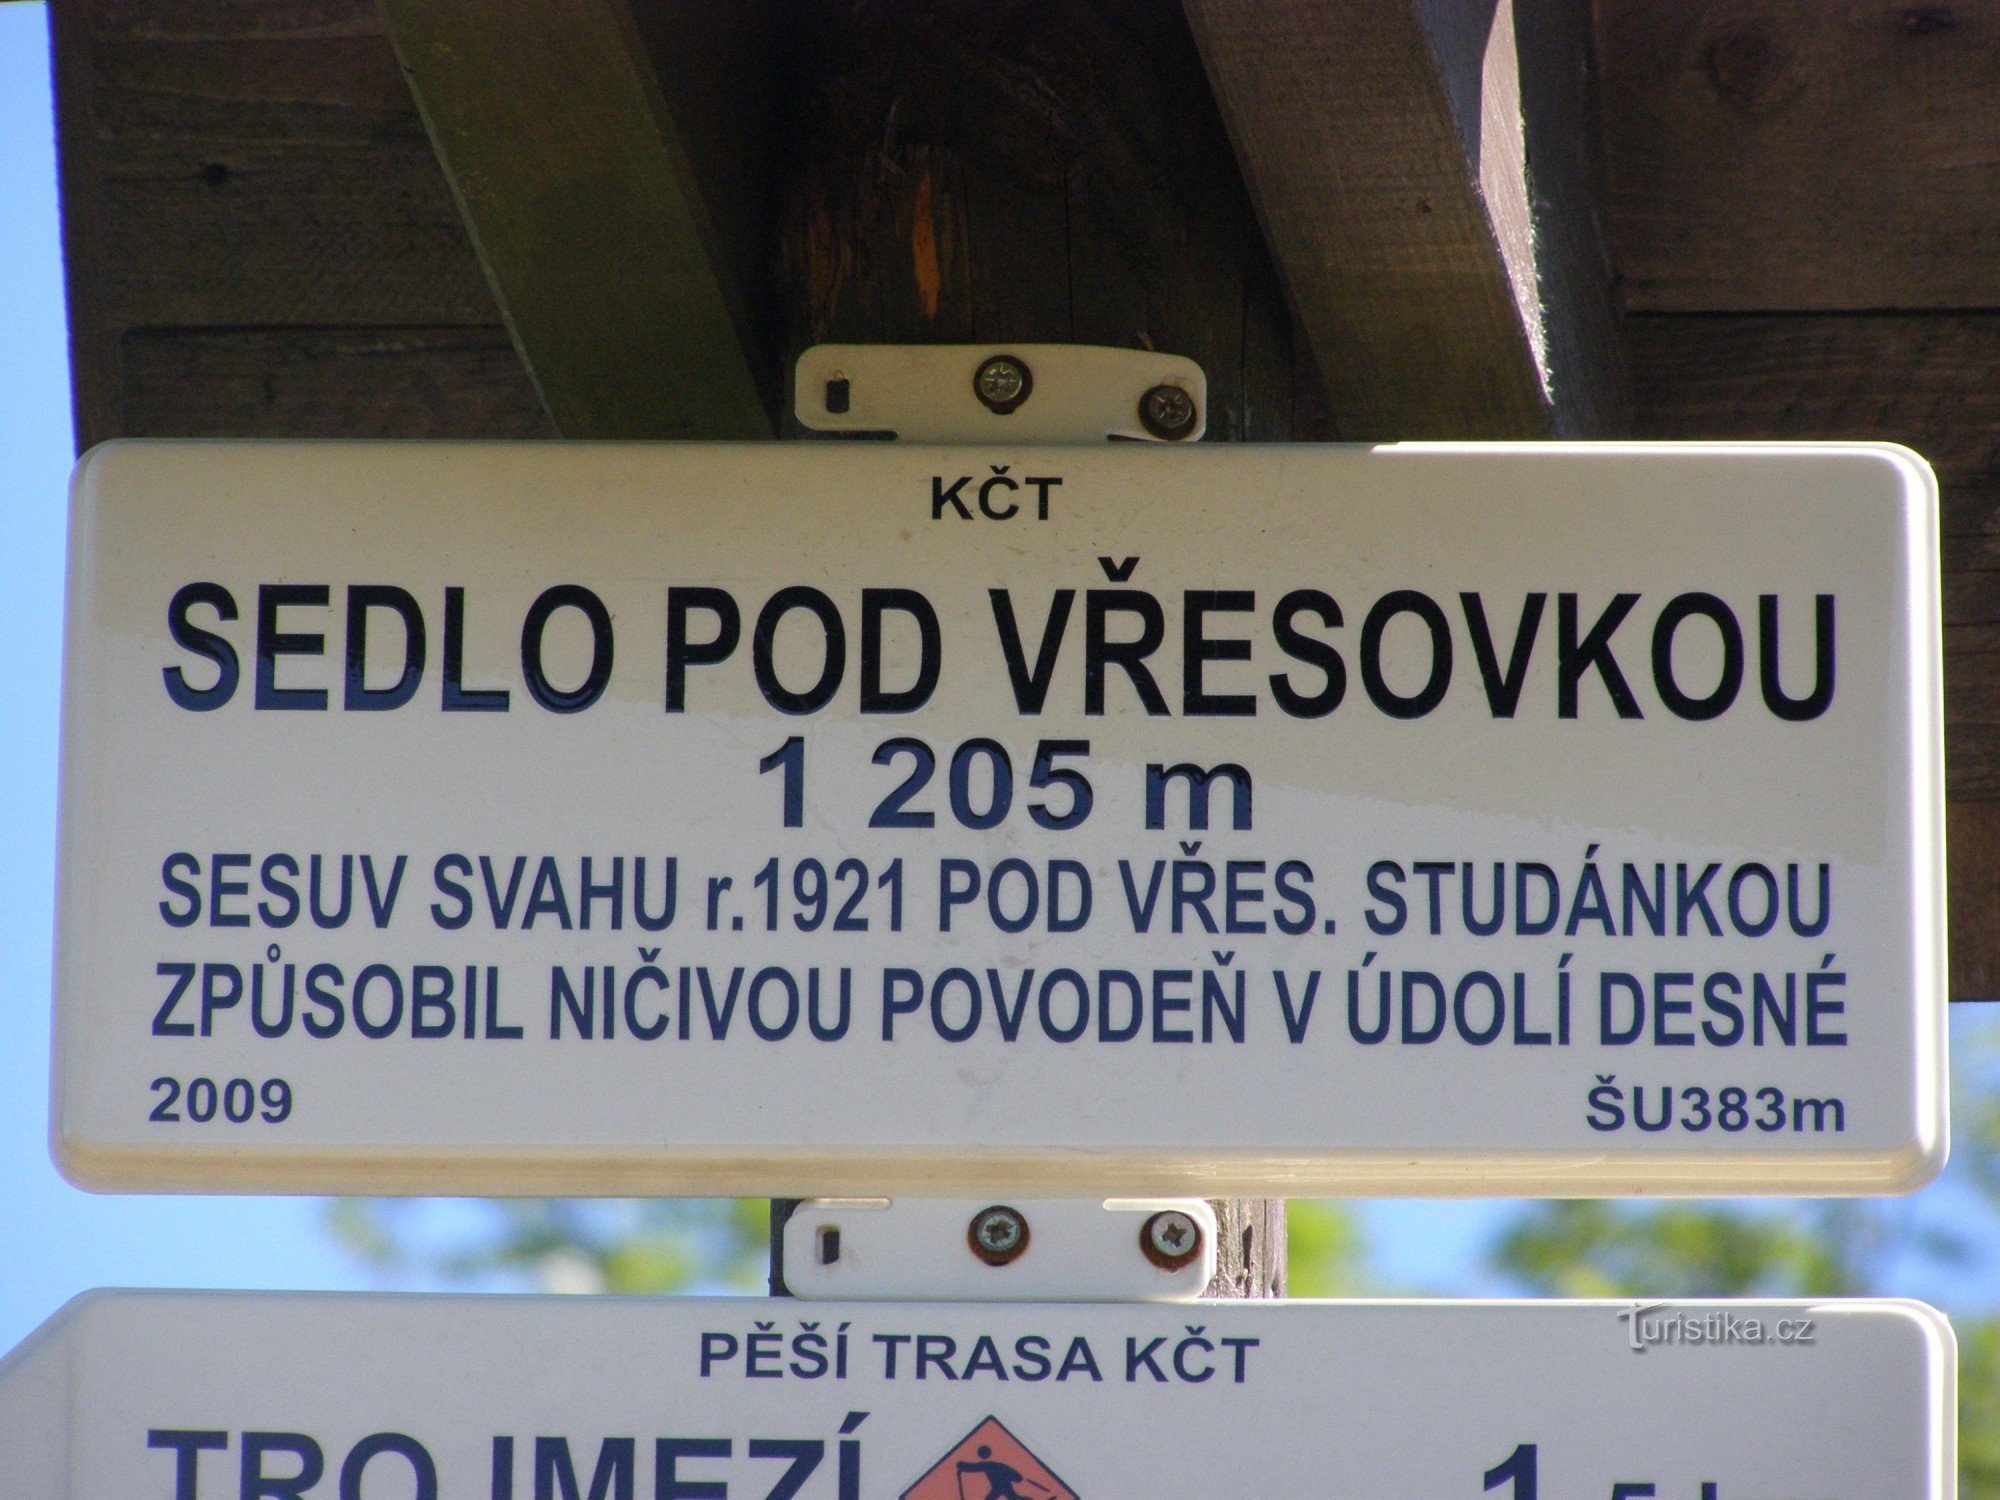 ngã tư du lịch - yên ngựa Pod Vřesovkou